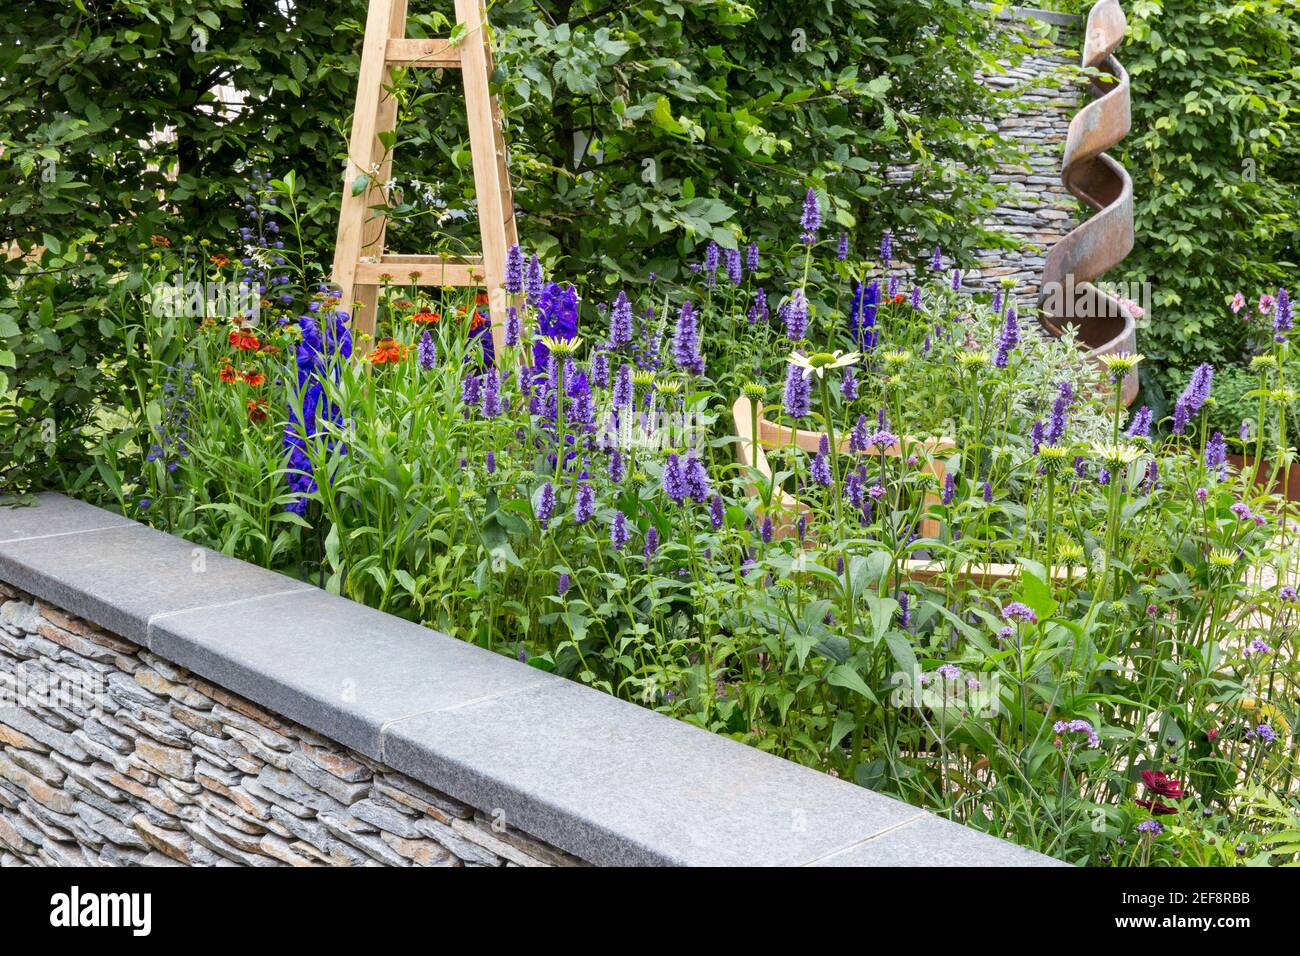 Cottage inglese giardino di campagna con vista su muro di pietra a secco e fiore letto giardino confine crescente Agastache fiori in estate Londra UK Inghilterra Foto Stock